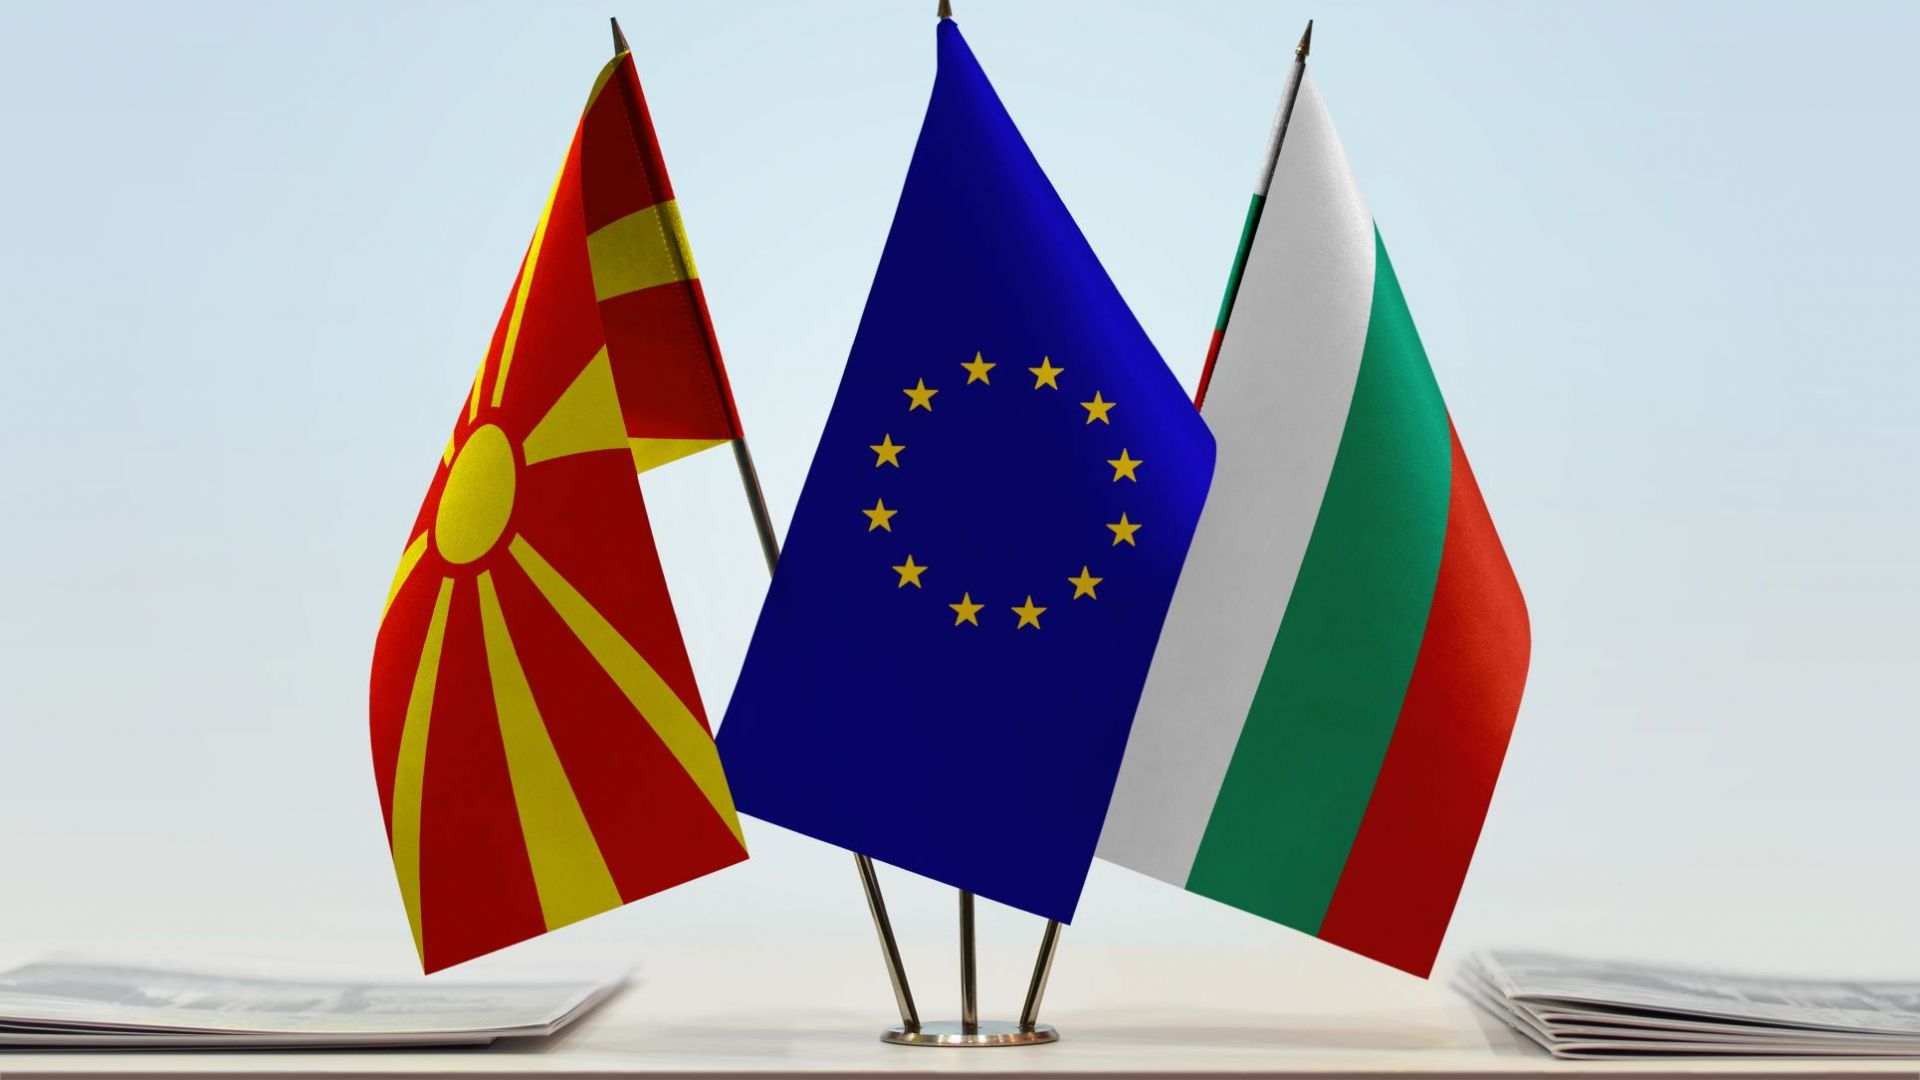 Bulgaria Macedonia Flags